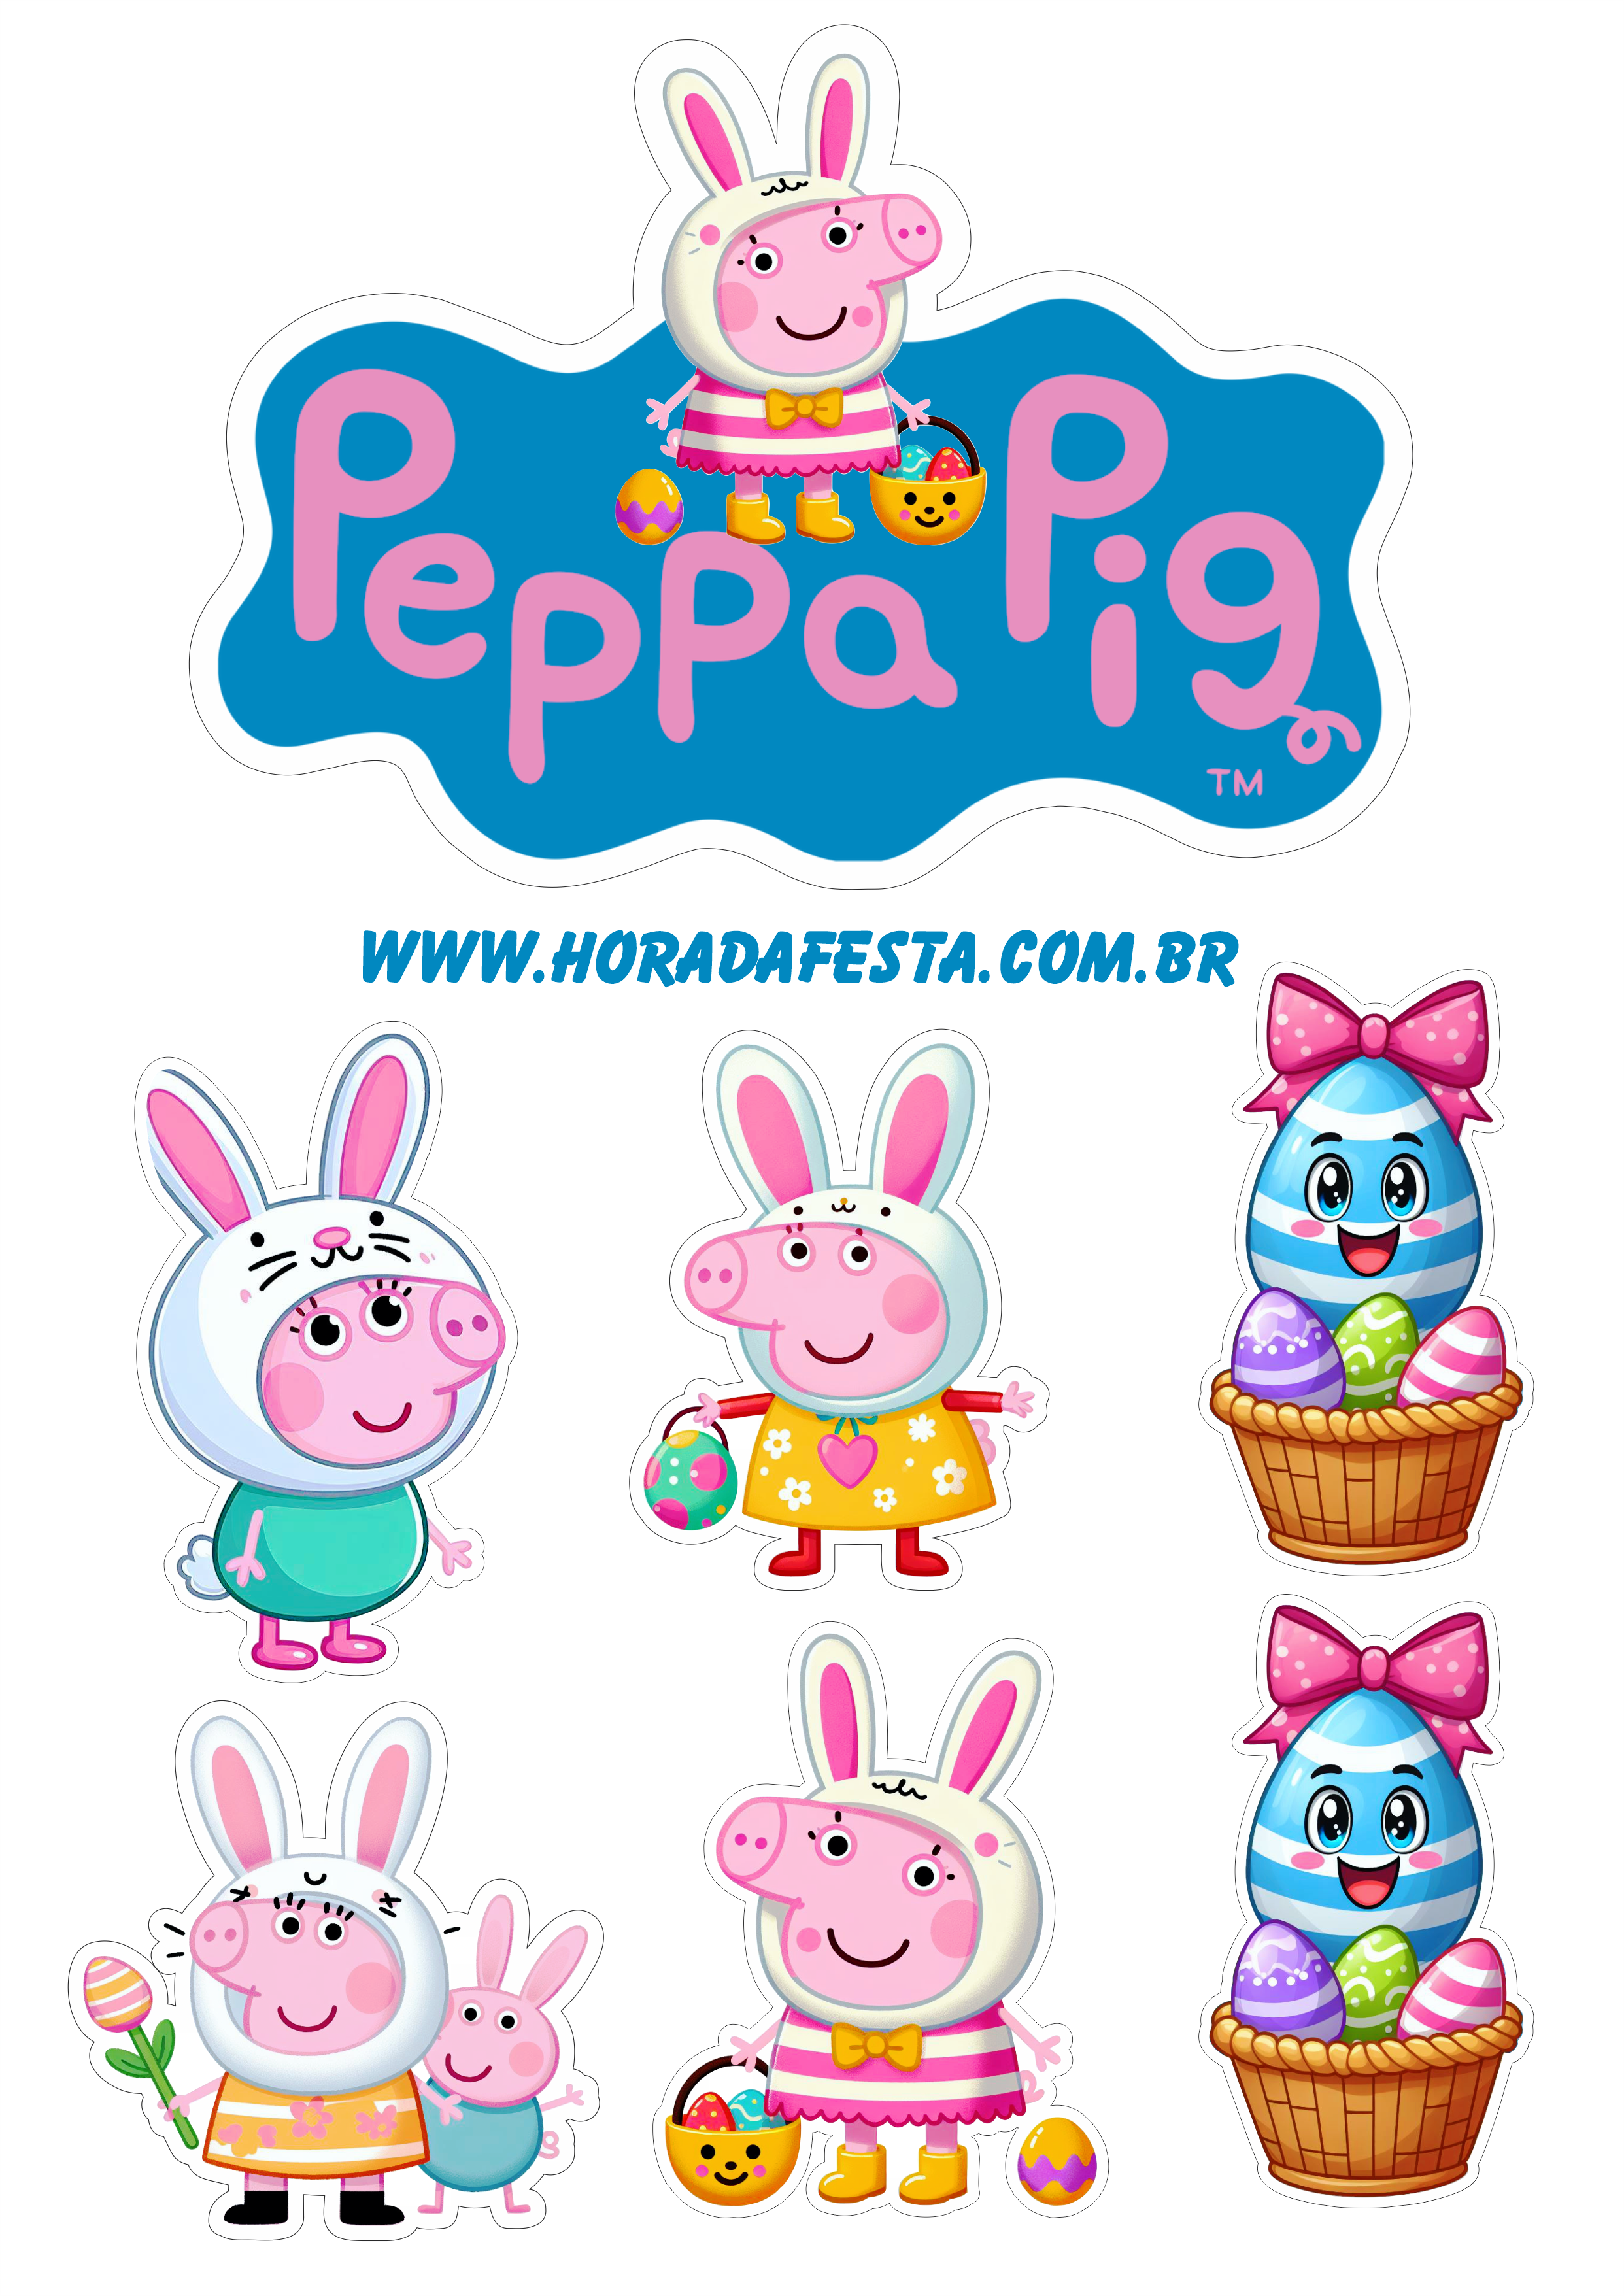 Peppa pig decoração de aniversário infantil com tema páscoa coelhinho topo de bolo para imprimir png